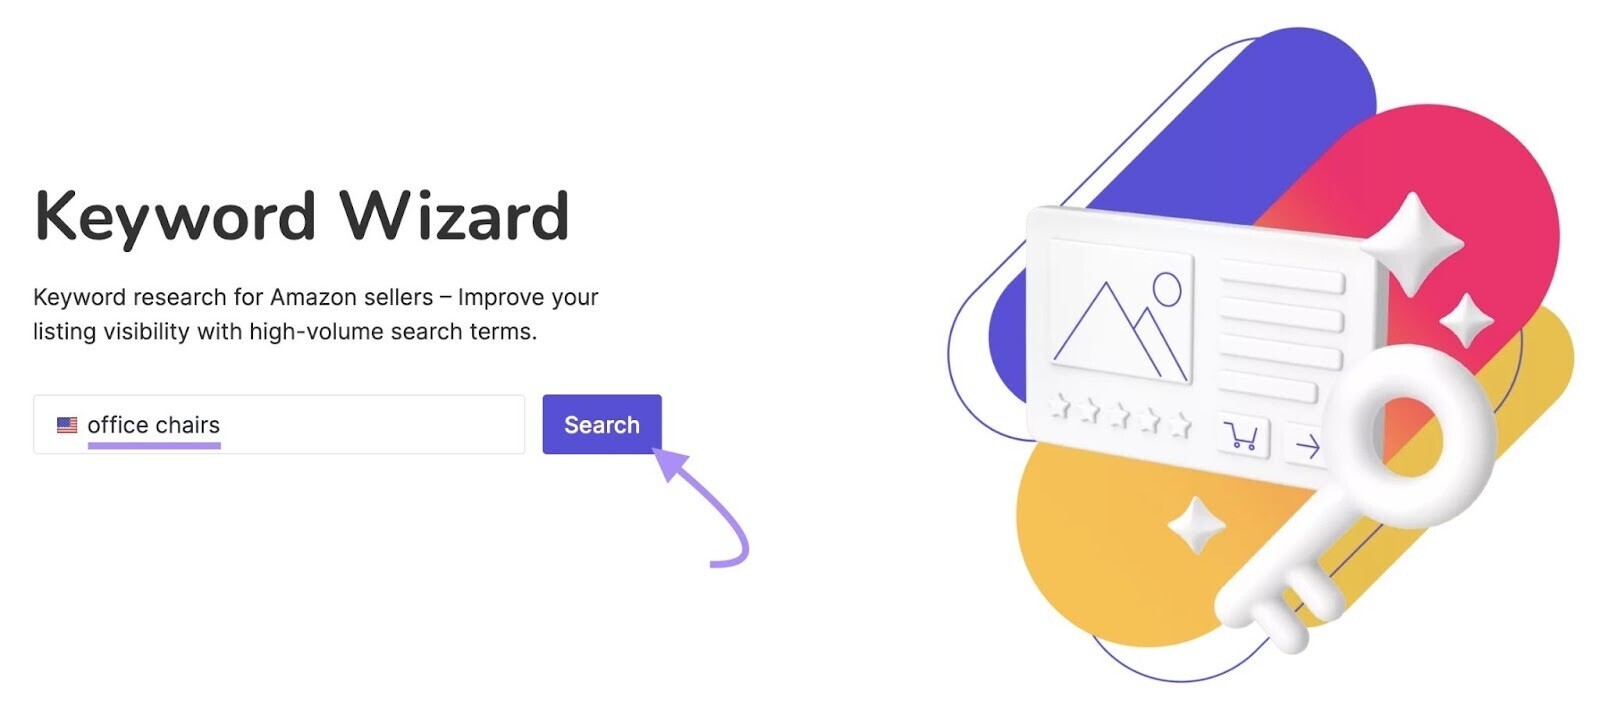 Keyword Wizard for Amazon tool